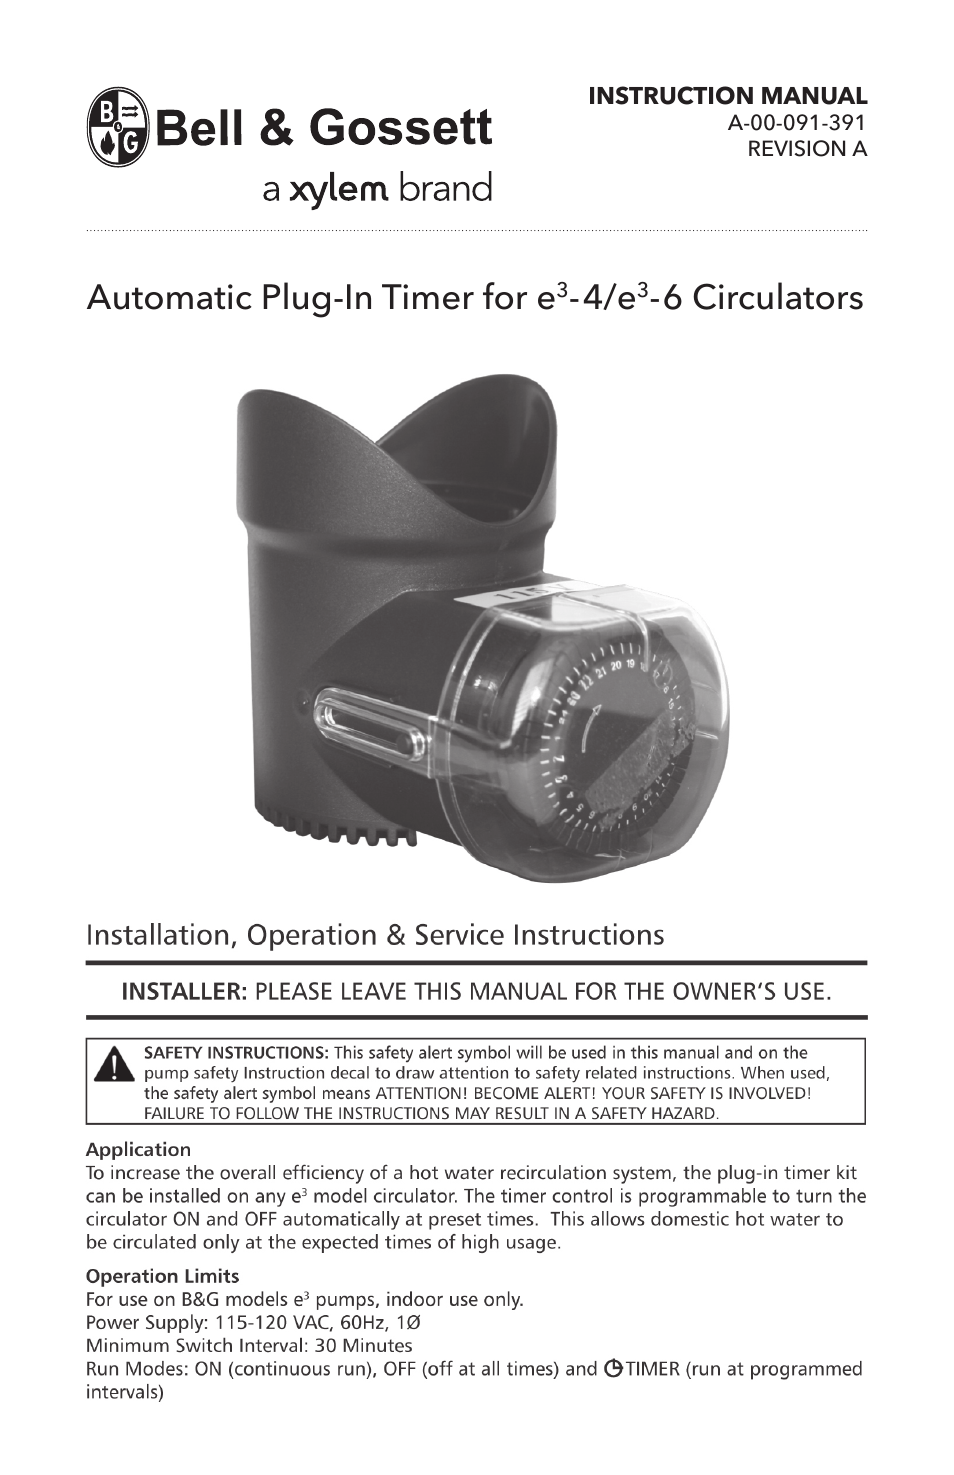 A 00 091 391A Automatic Plug-In Timer for e³-4/e³-6 Circulators